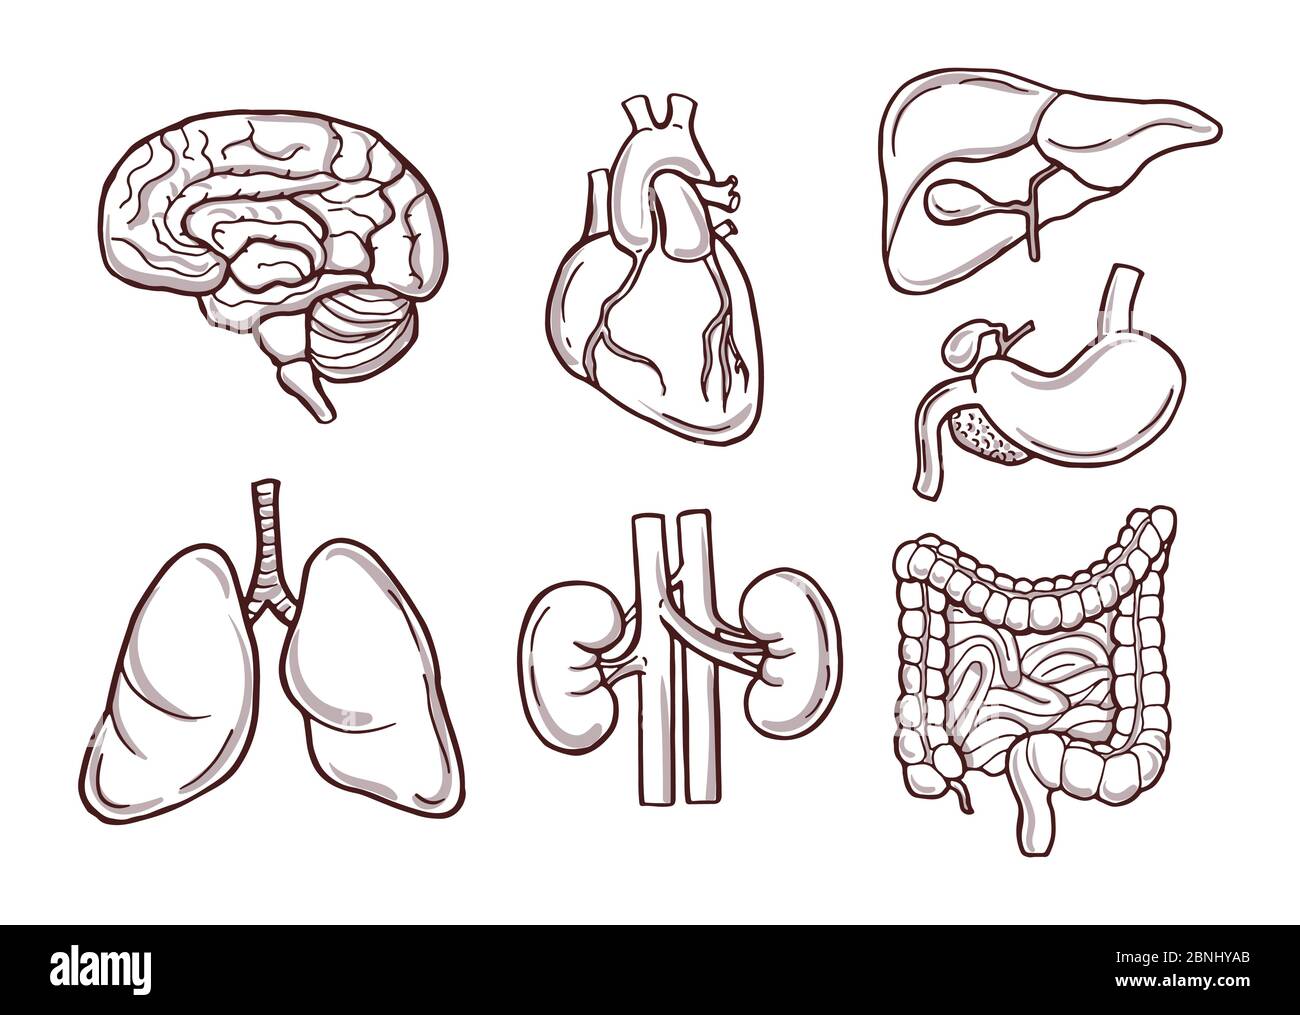 Handgezeichnete Darstellung menschlicher Organe. Medizinische Bilder Stock Vektor